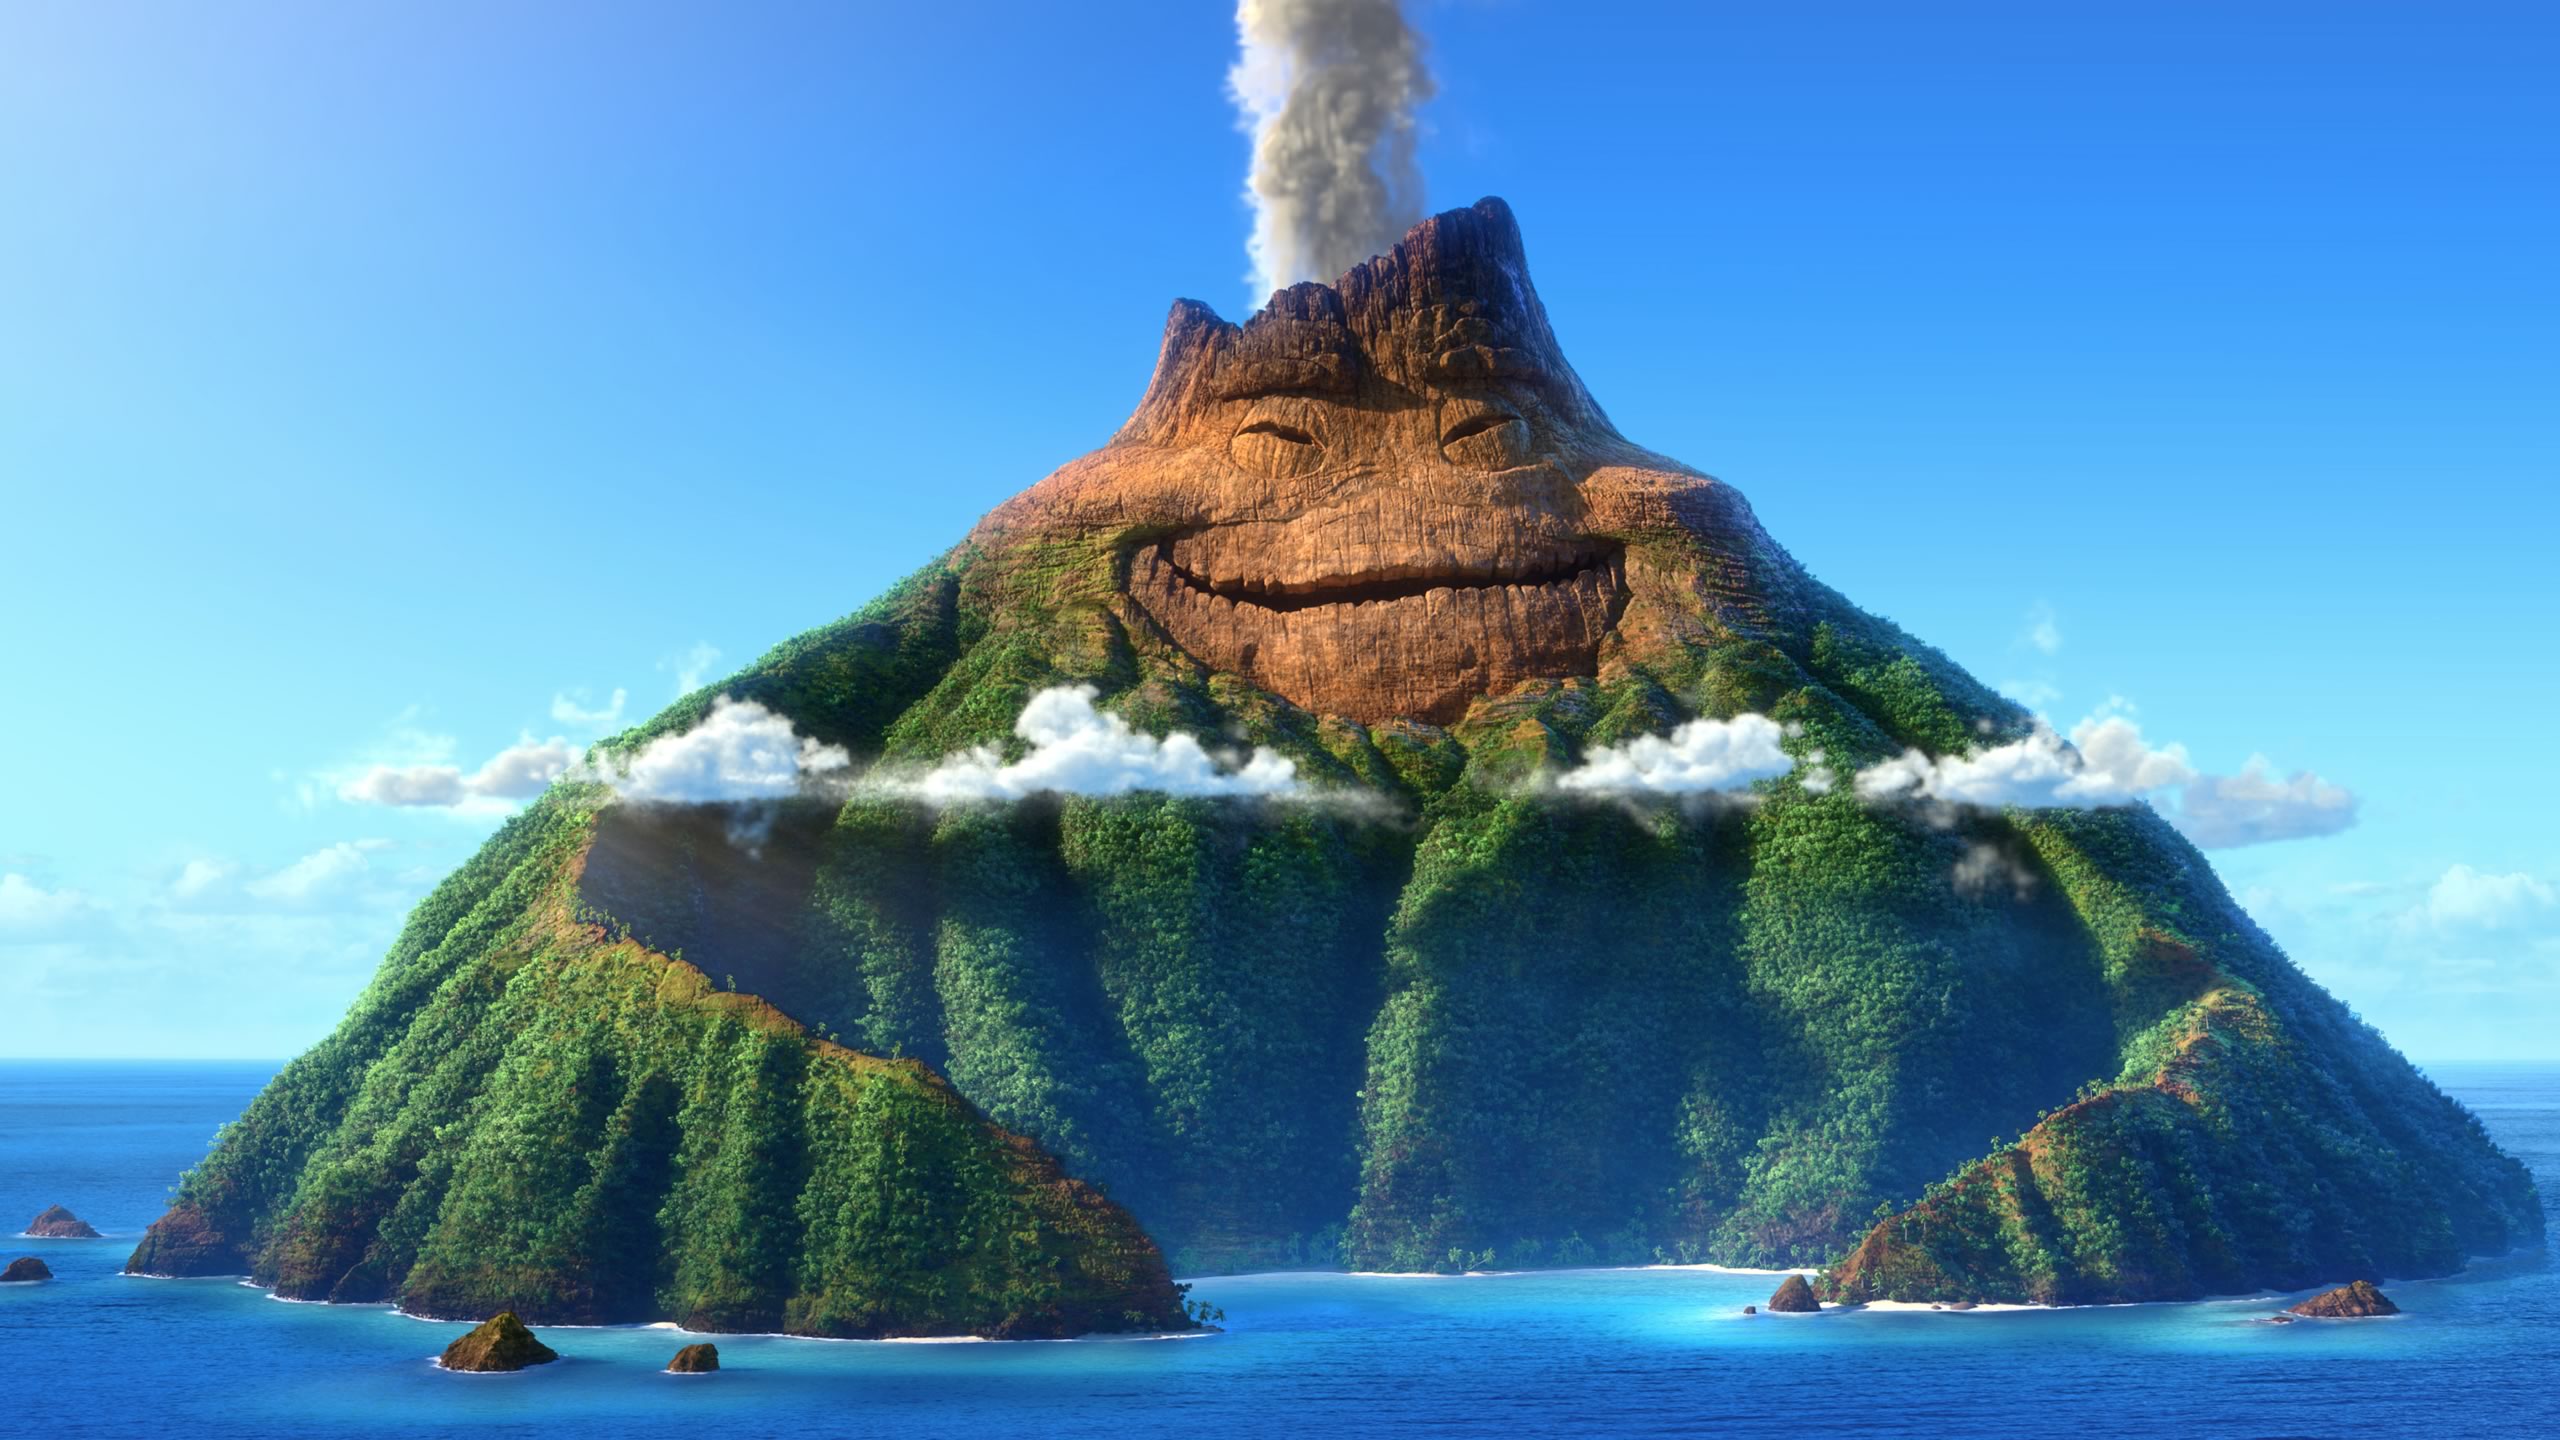 download wallpaper: Lava (Pixar Short) wallpaper